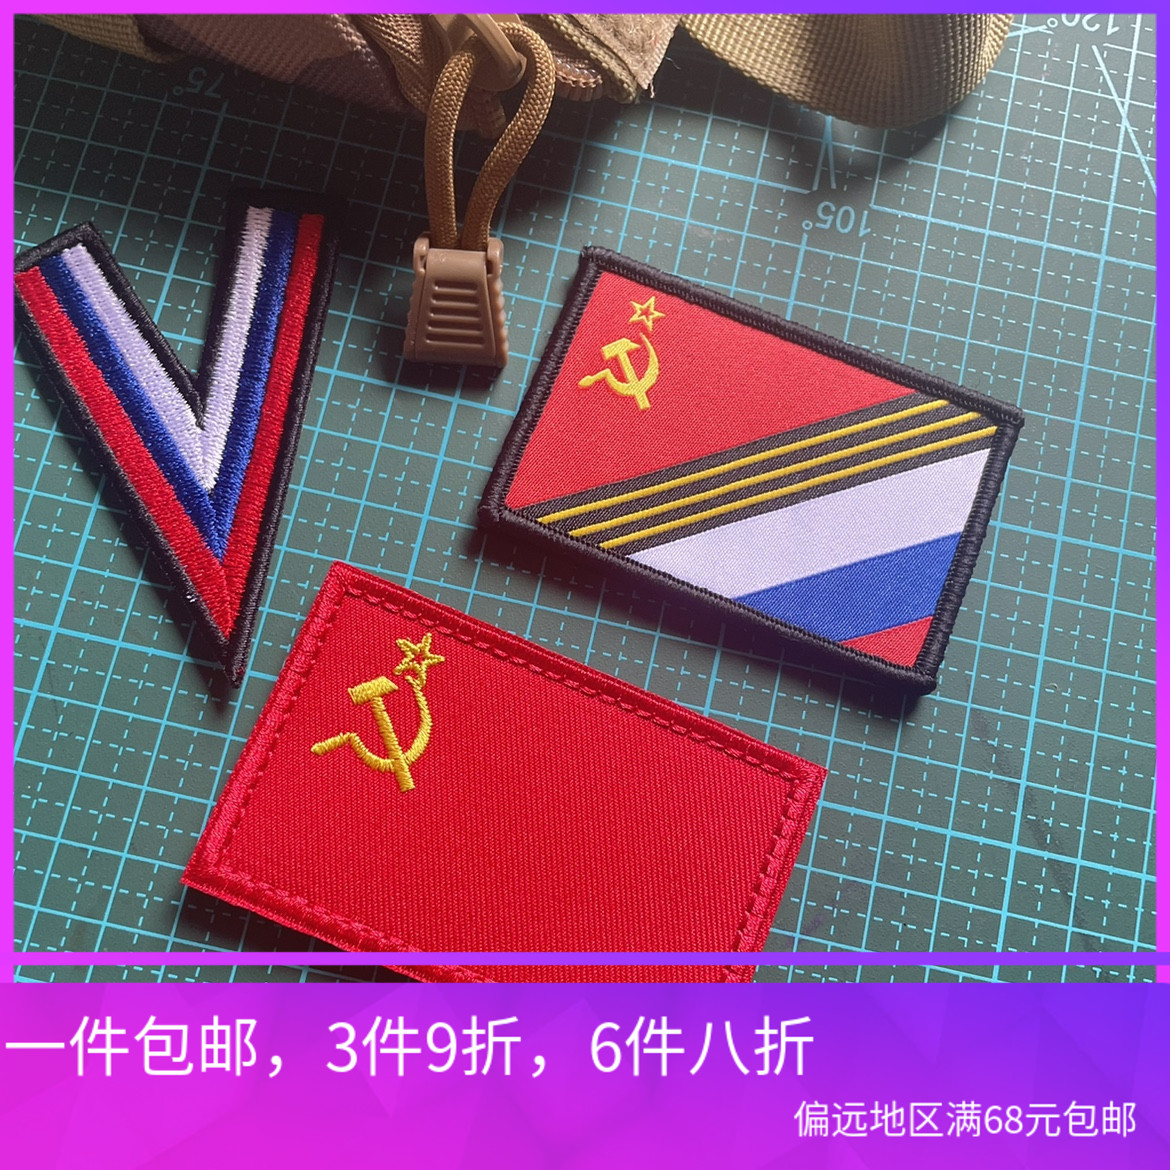 乌拉俄罗斯特别军事行动苏联旗风格V真理刺绣魔术贴士气章臂章